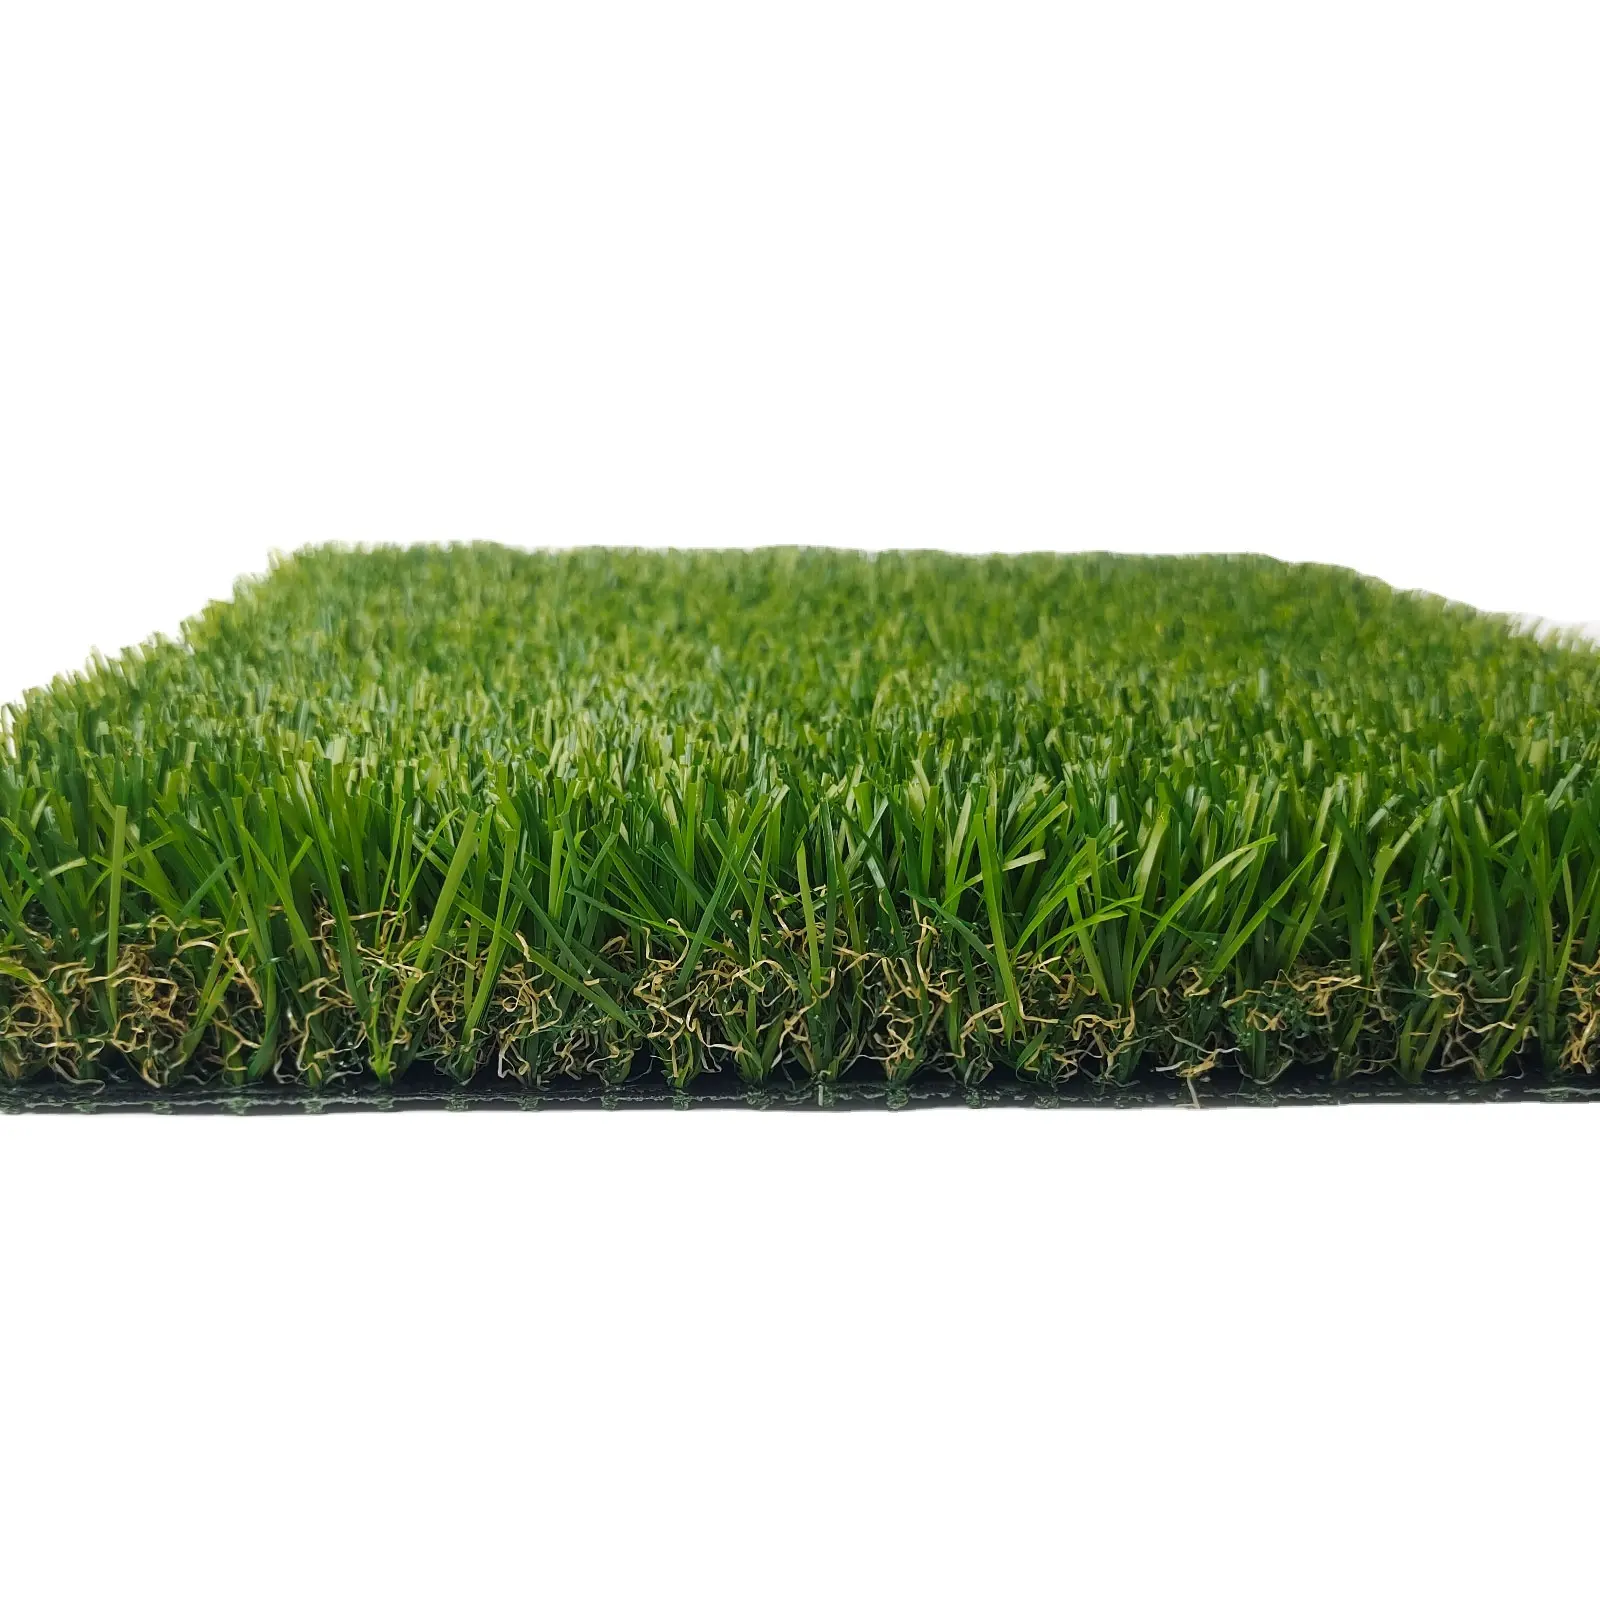 Preiswerter Kunstgras Landschaftsbau Kunstgras 40mm Synthetischer Rasen Outdoor-Grasteppich SKYJADE Tebwn-Nv